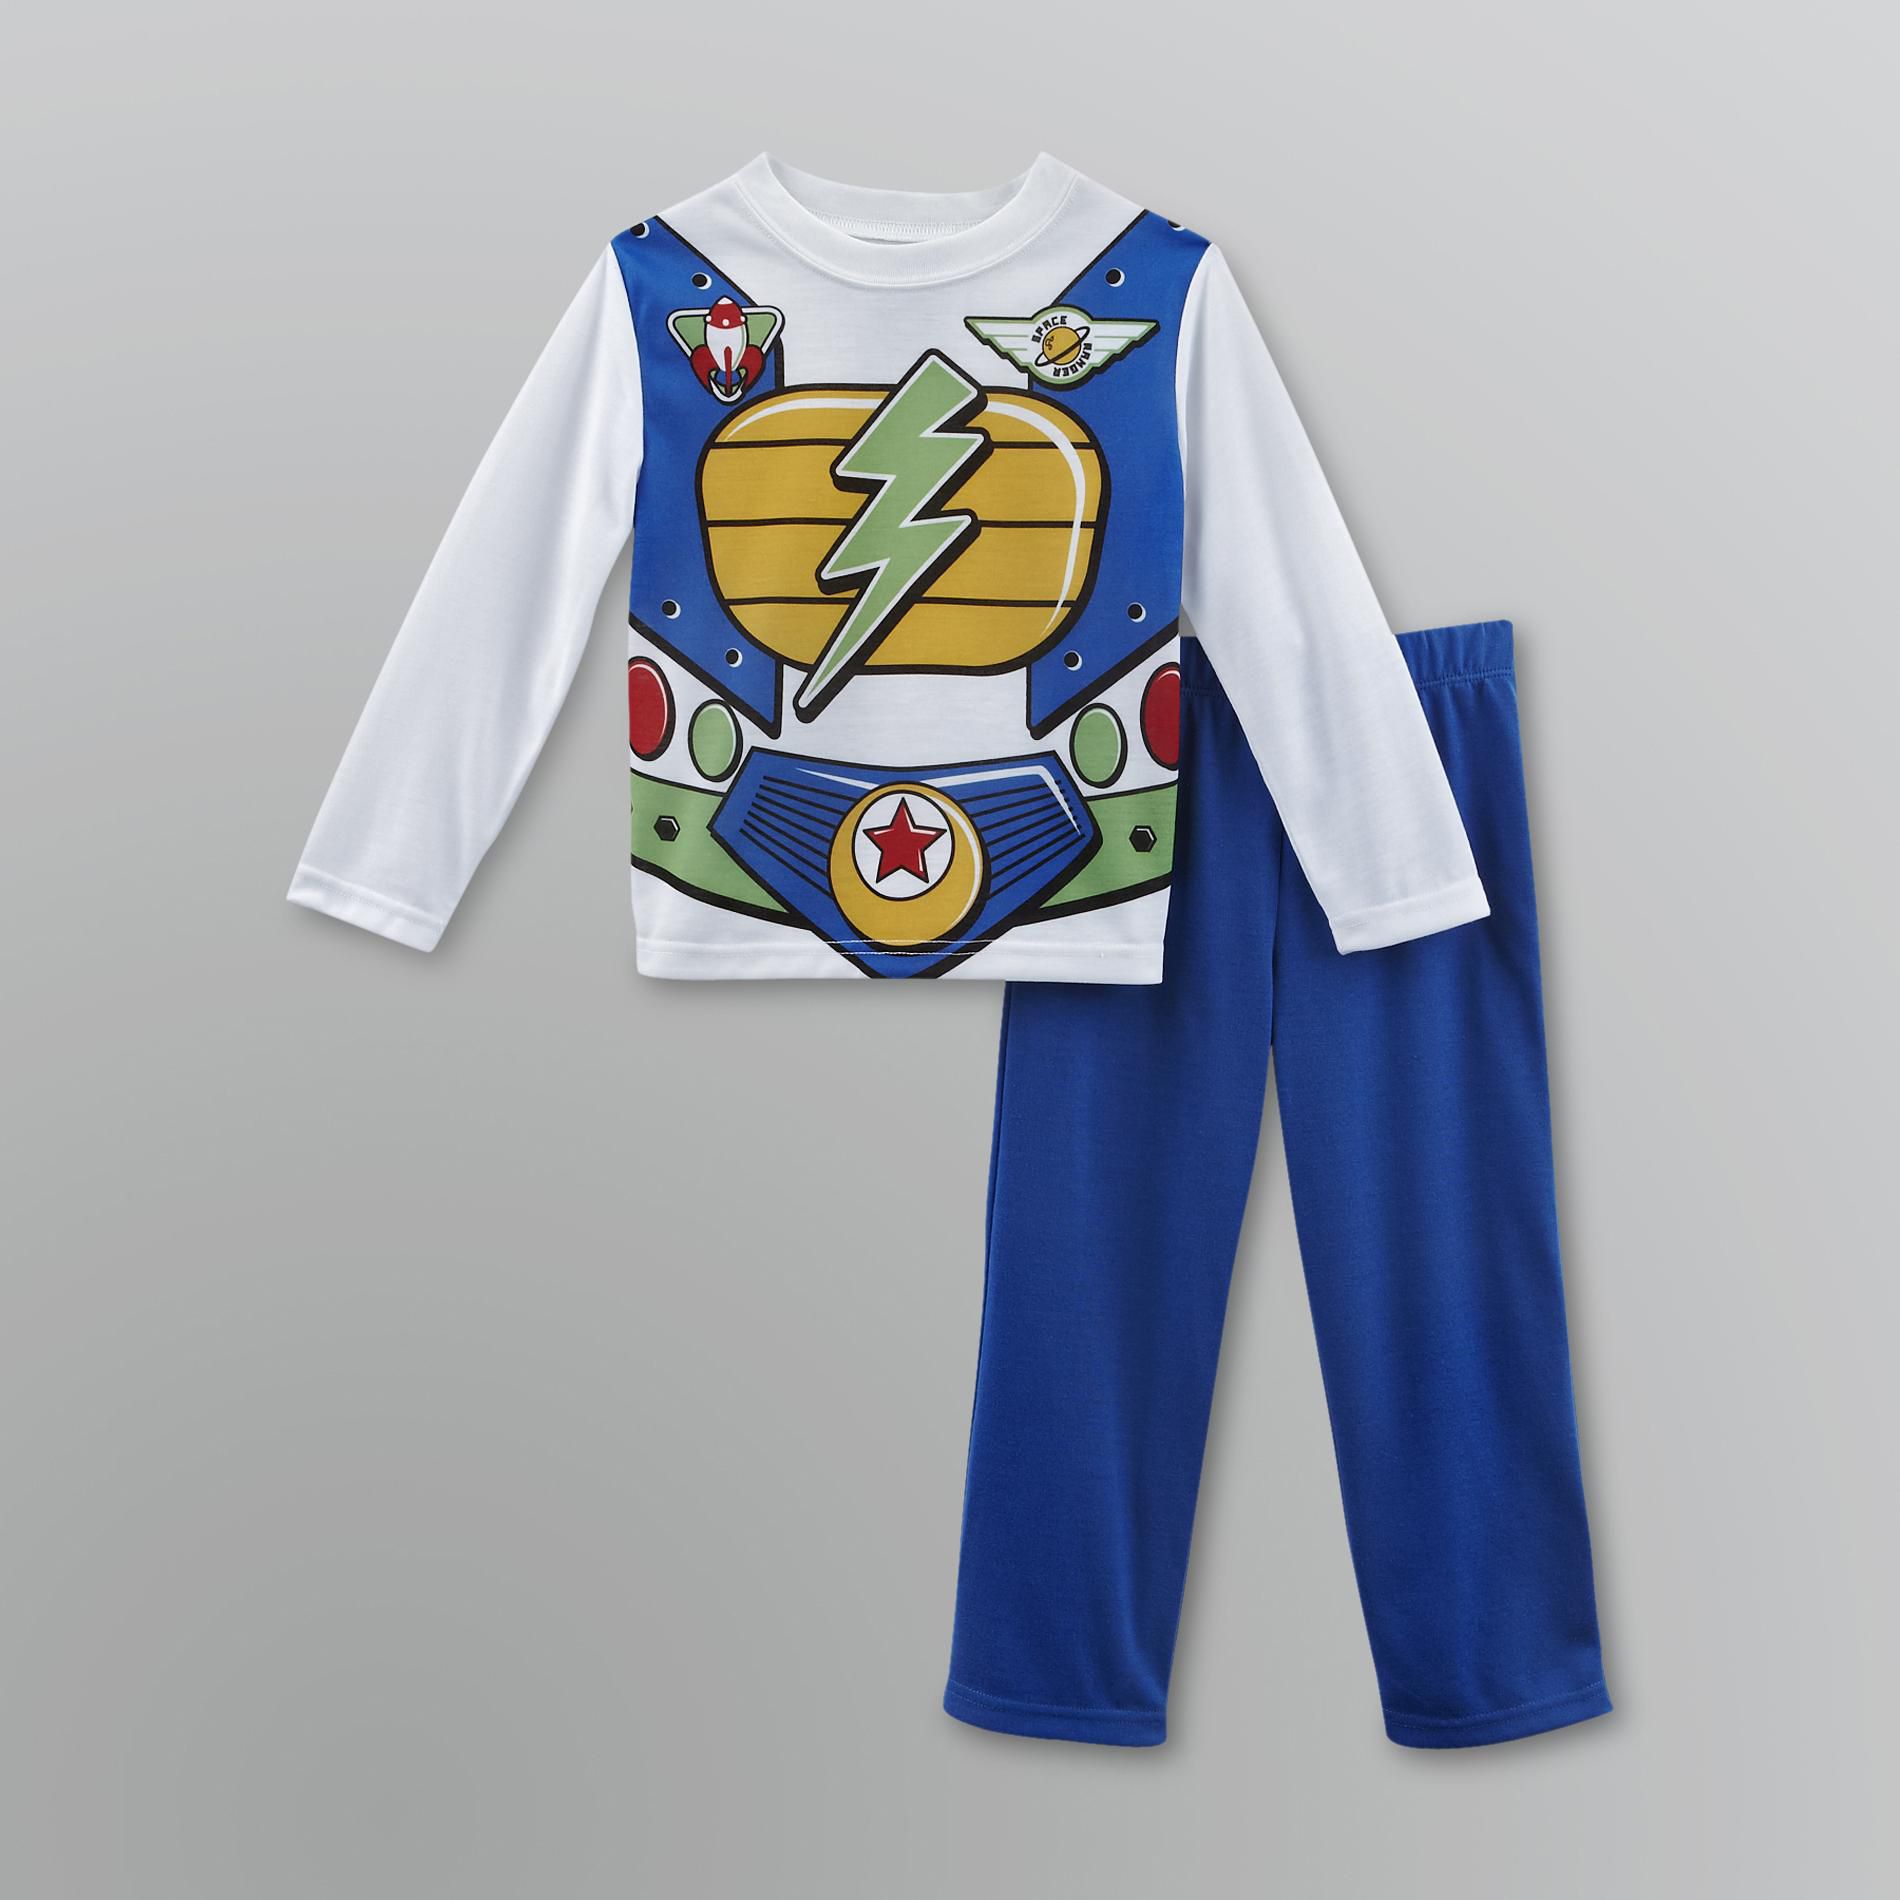 Joe Boxer Toddler Boy's Space Ranger Pajama Set